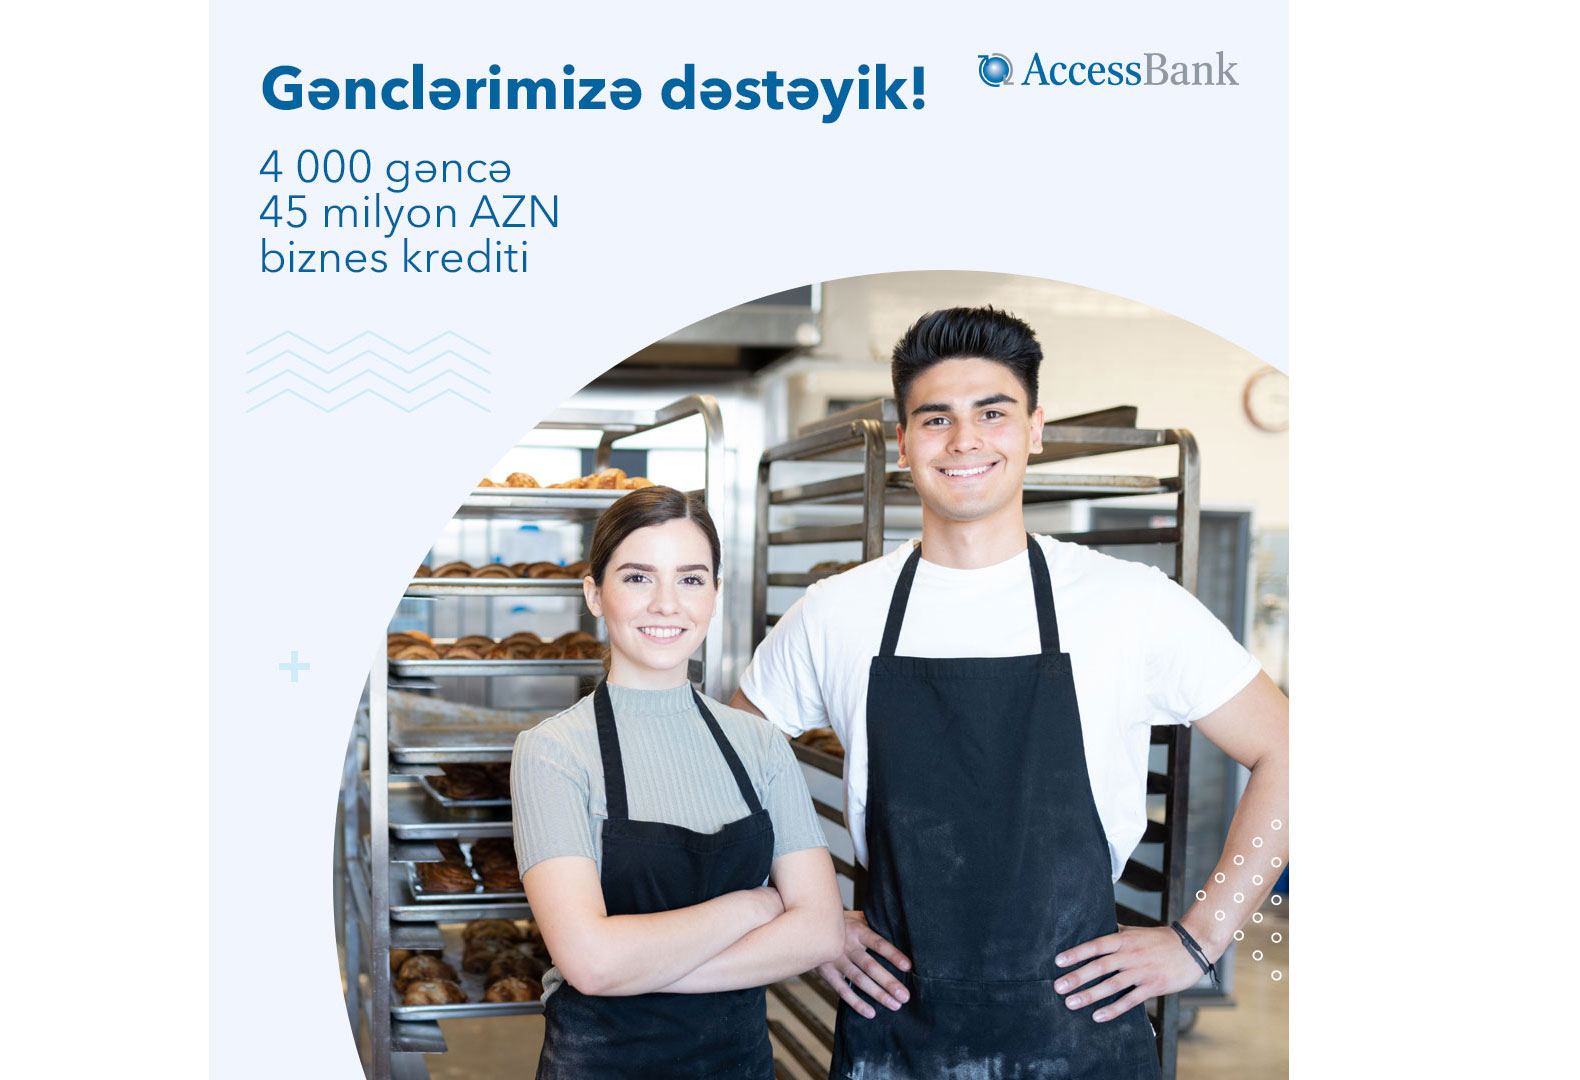 AccessBank gənc sahibkarlara 45 milyondan çox biznes krediti ayırıb (R)